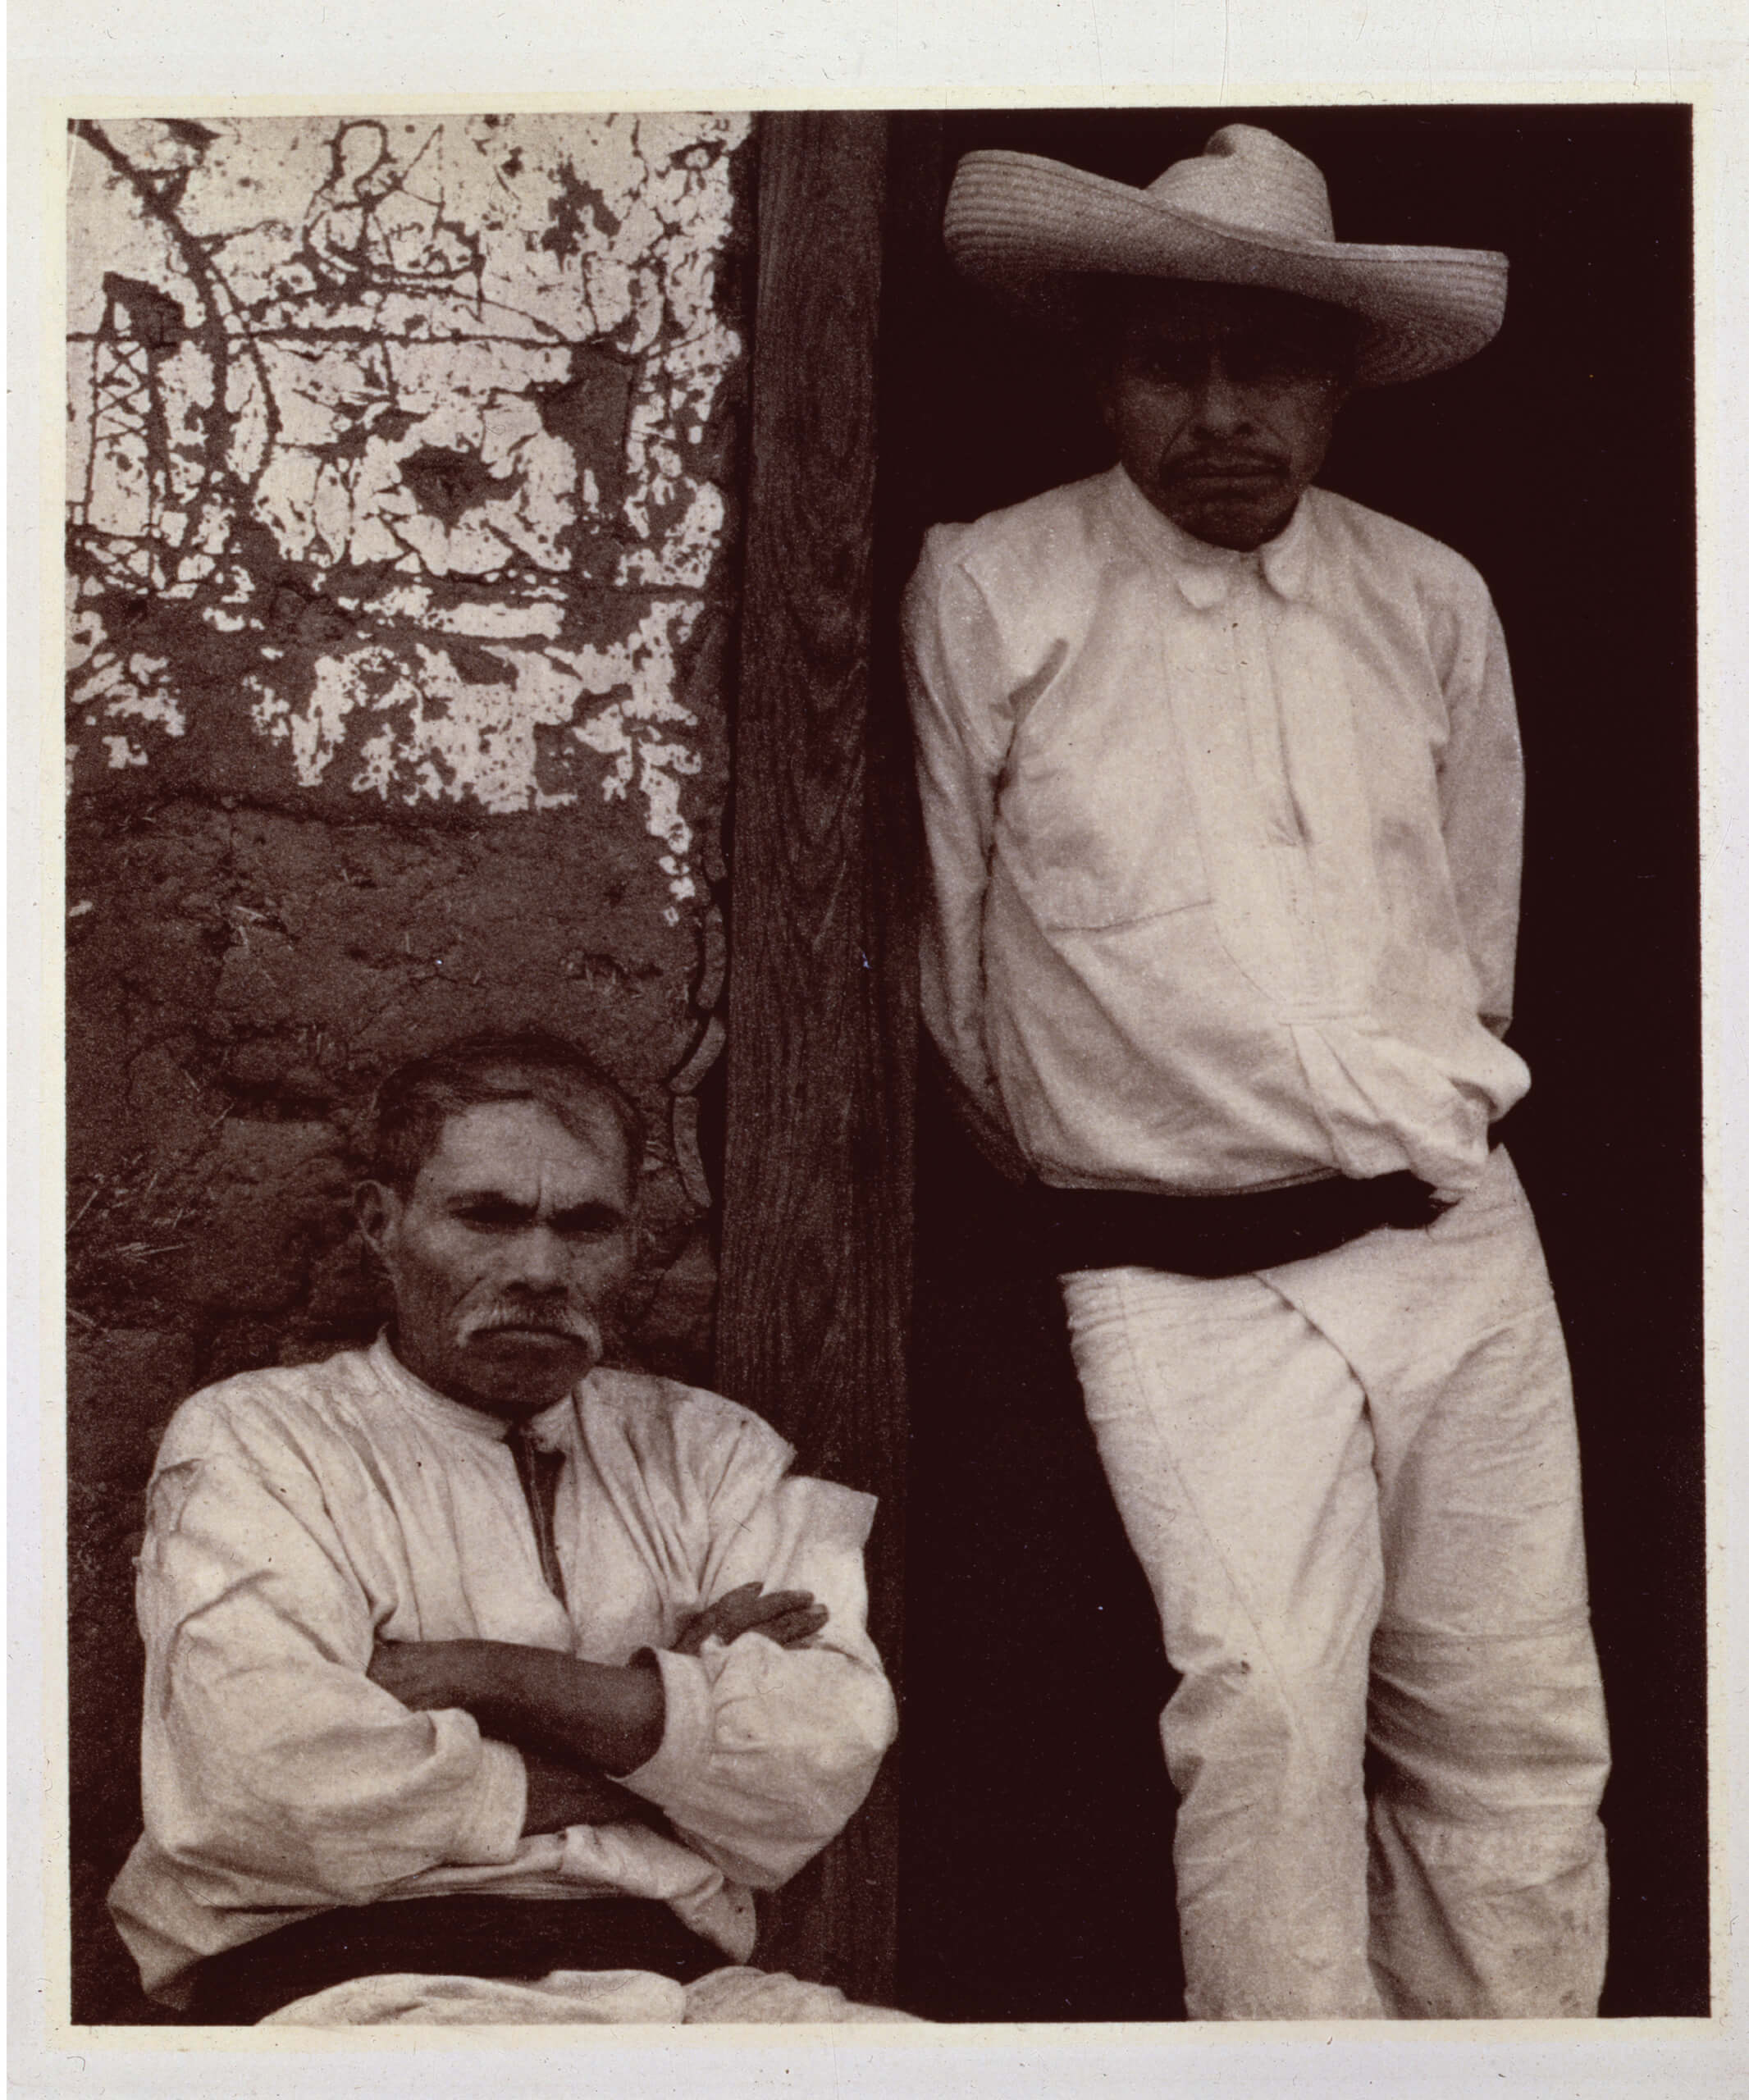 Men of Santa Ana, Lake Pátzcuaro [Hombres de Santa Ana, lago de Pátzcuaro] Michoacán | El murmullo de los rostros. Paul Strand en México | Museo Amparo, Puebla